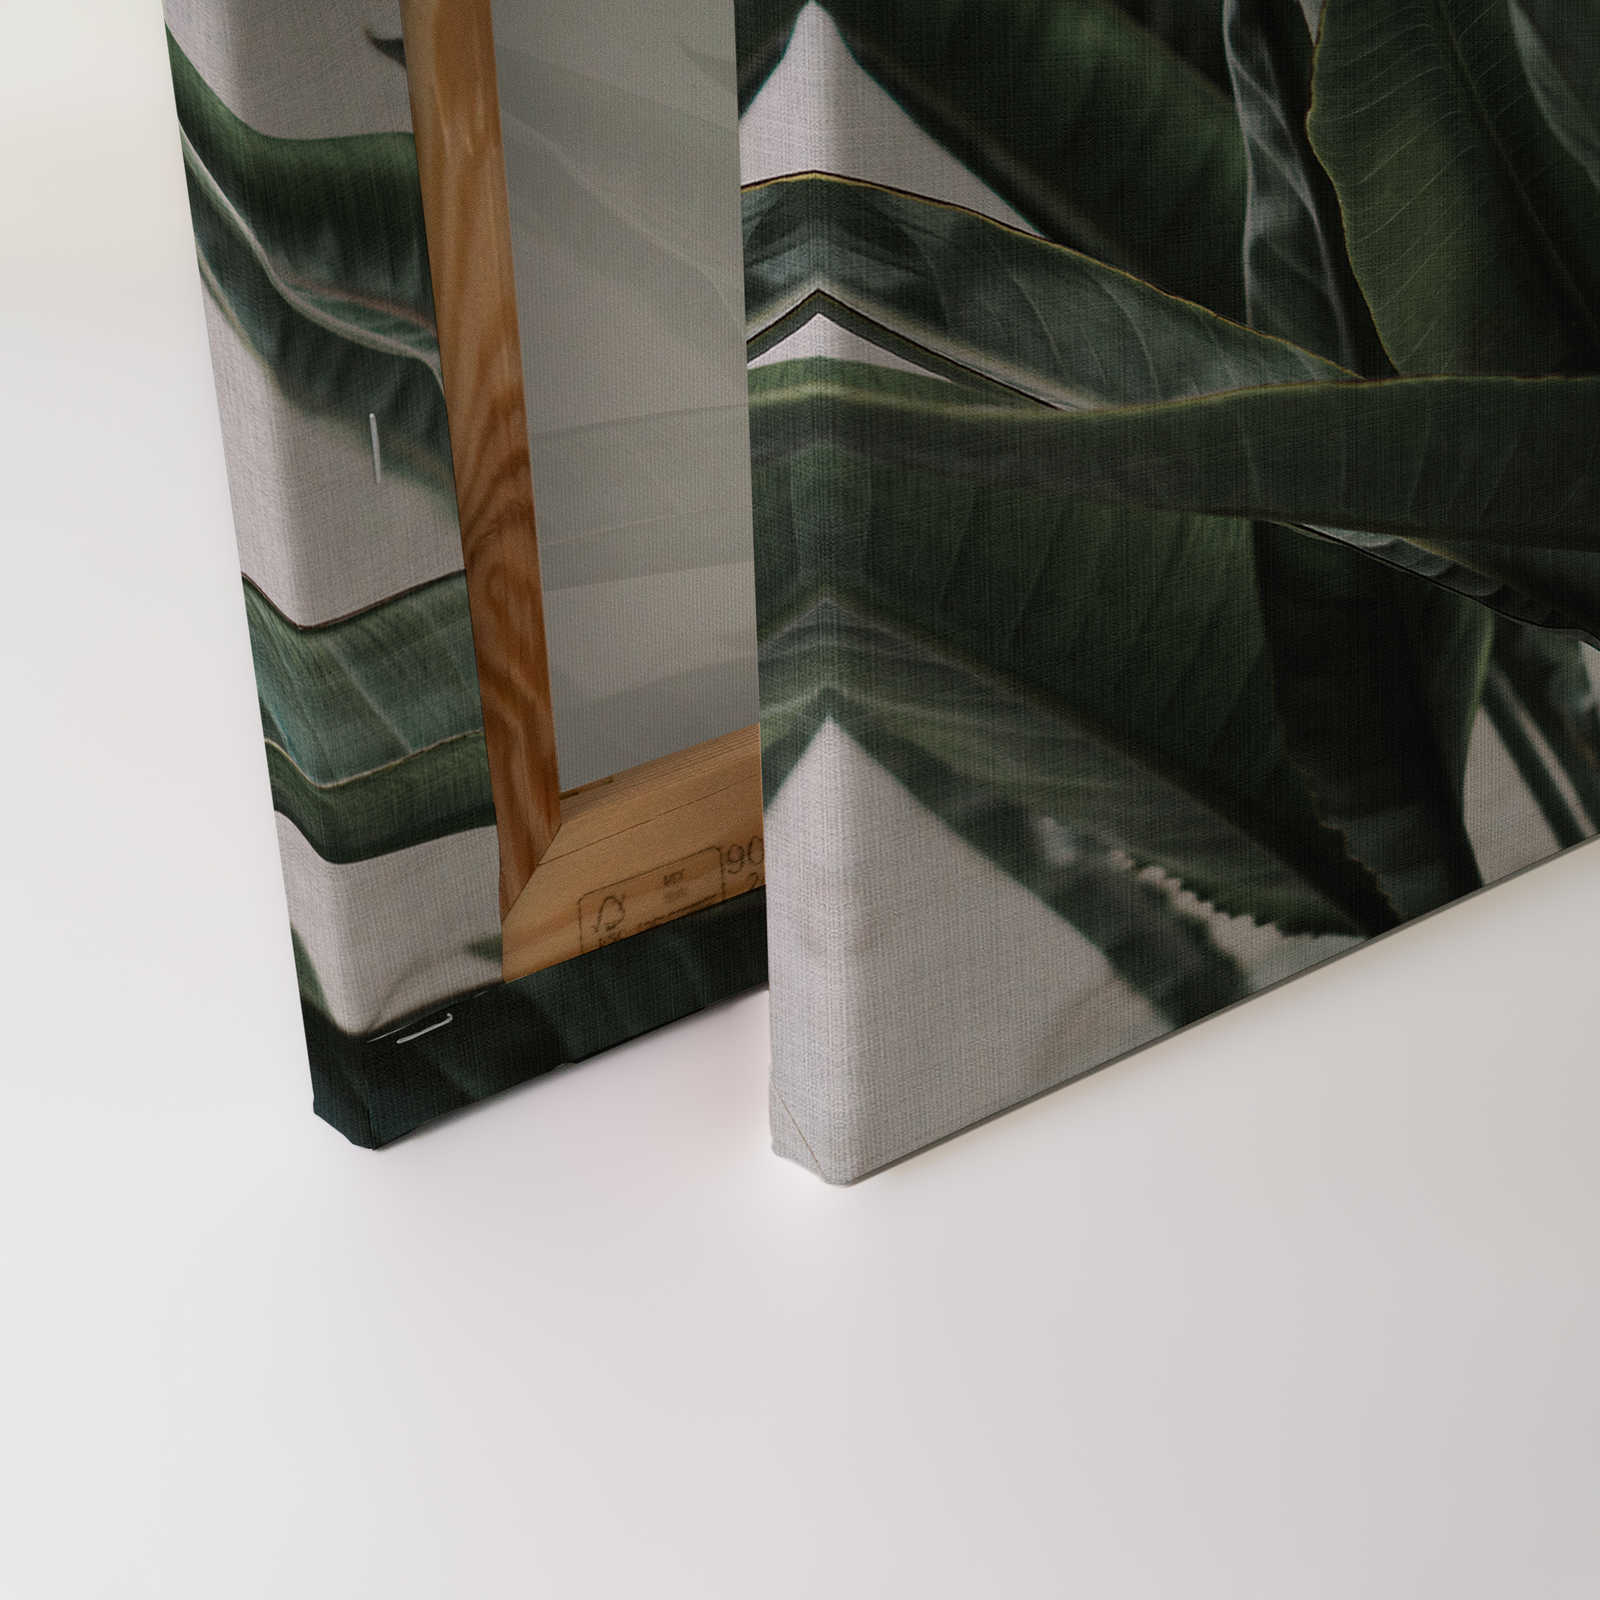             Urban jungle 2 - Feuilles de palmier toile, structure lin naturel plantes exotiques - 0,90 m x 0,60 m
        